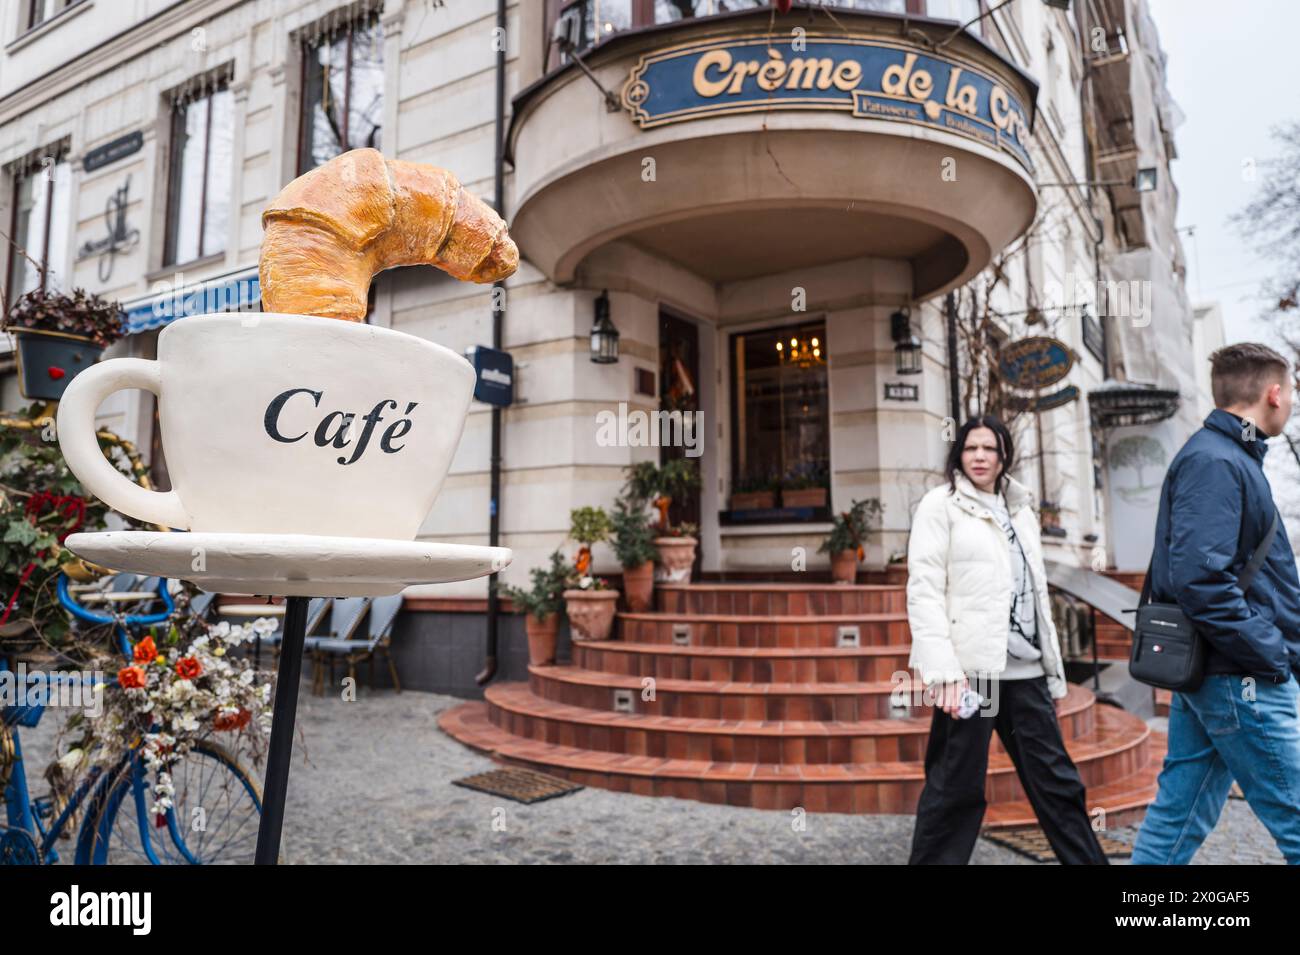 Il caffè francese, Cream of the Cream, nel centro della città. Chisinau. Capitale della Repubblica moldova. Patricia Huchot-Boissier / Collectif DyF Foto Stock